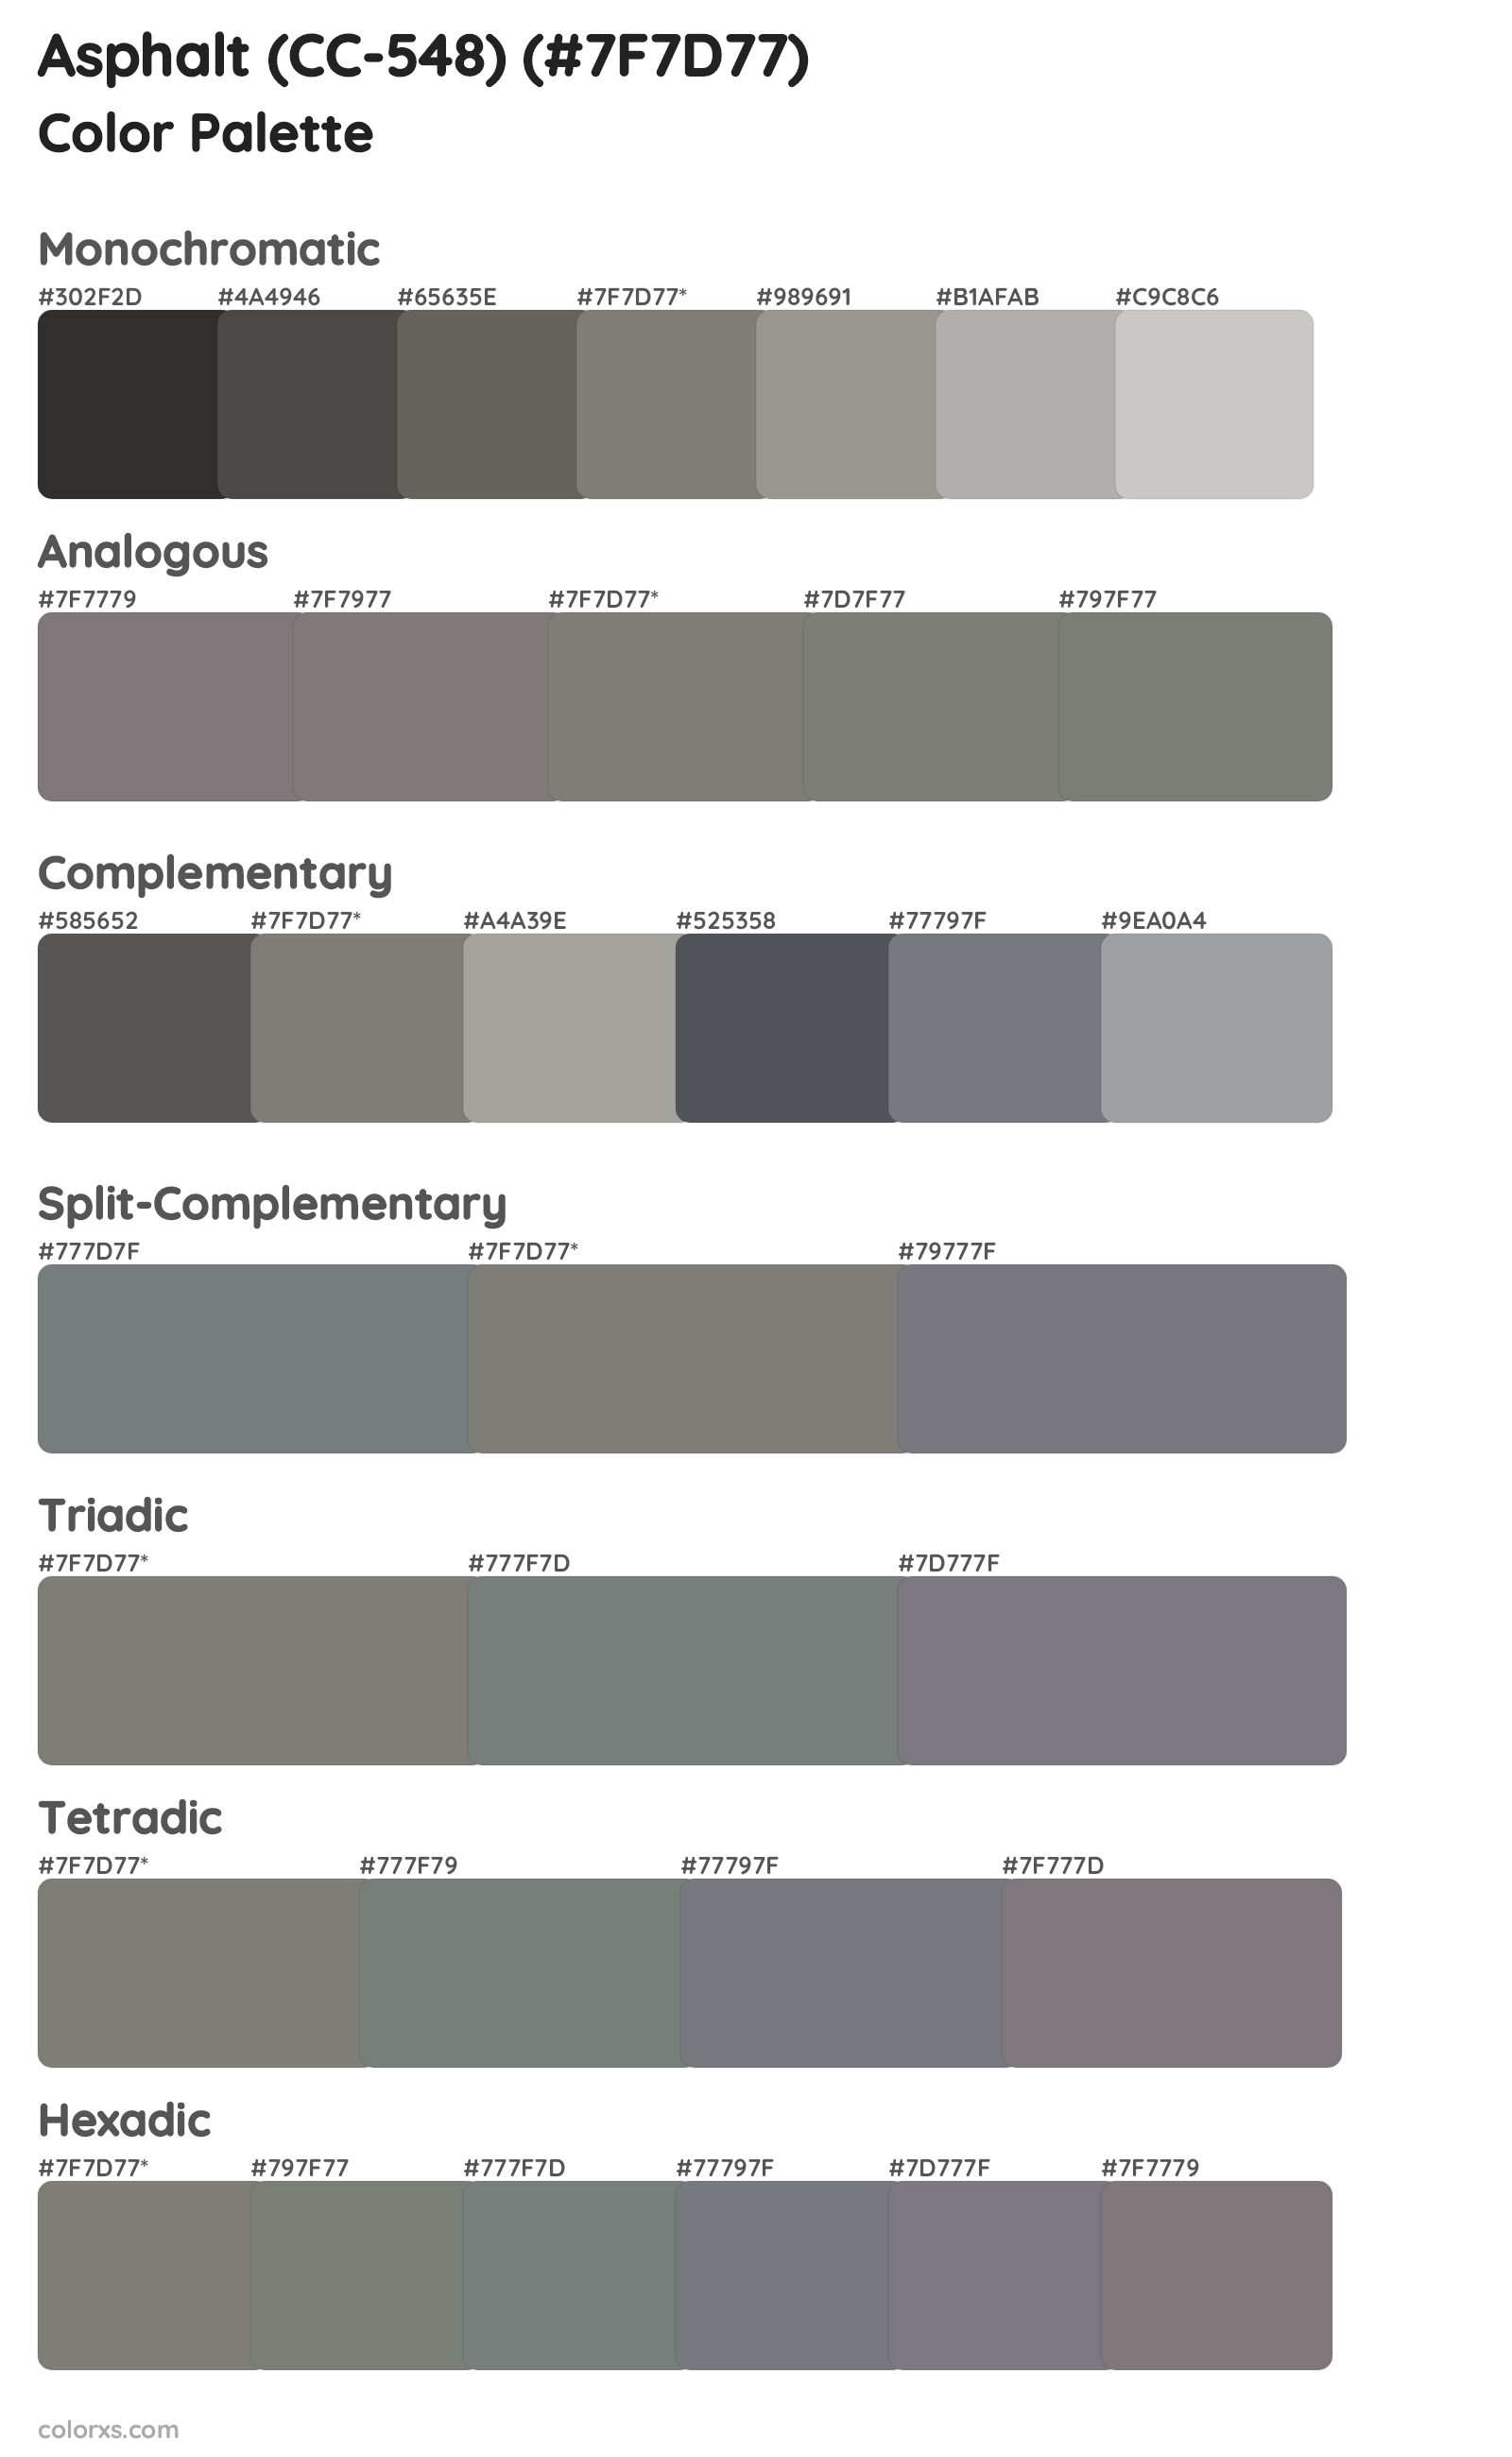 Asphalt (CC-548) Color Scheme Palettes